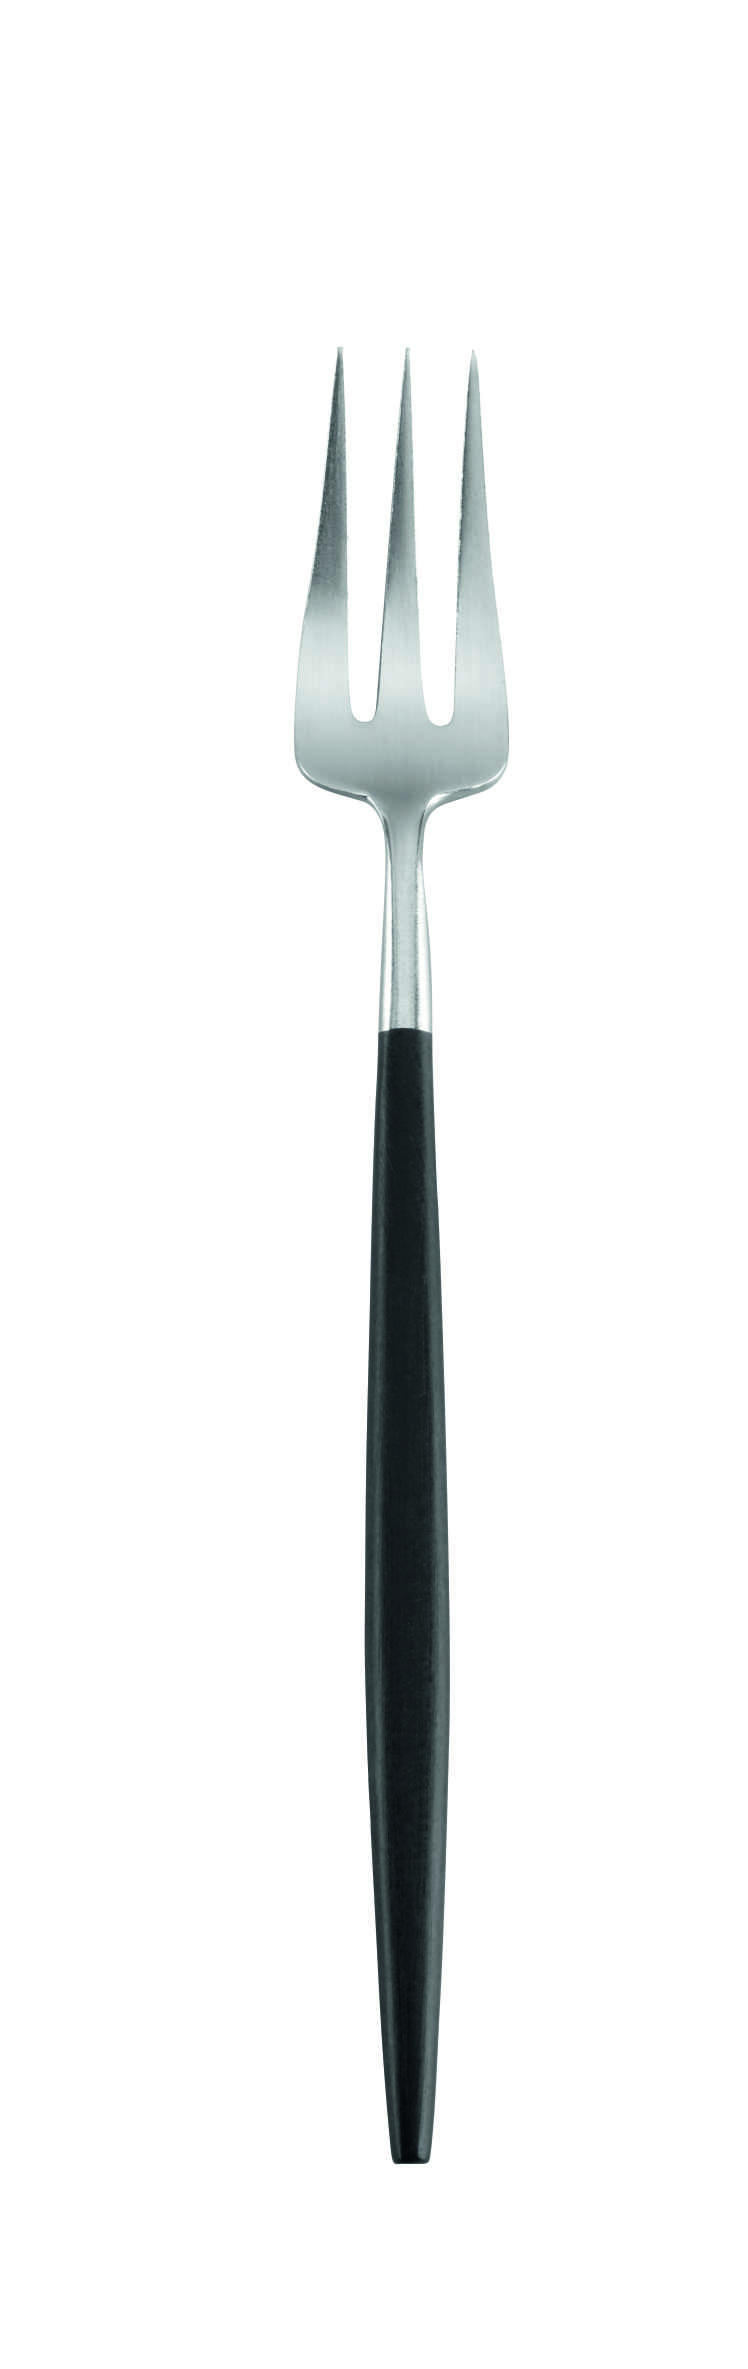 Kuchengabel GOA, schwarzer Griff 17cm  18/10 stainless steel matt ,Kunstharz schwarz 